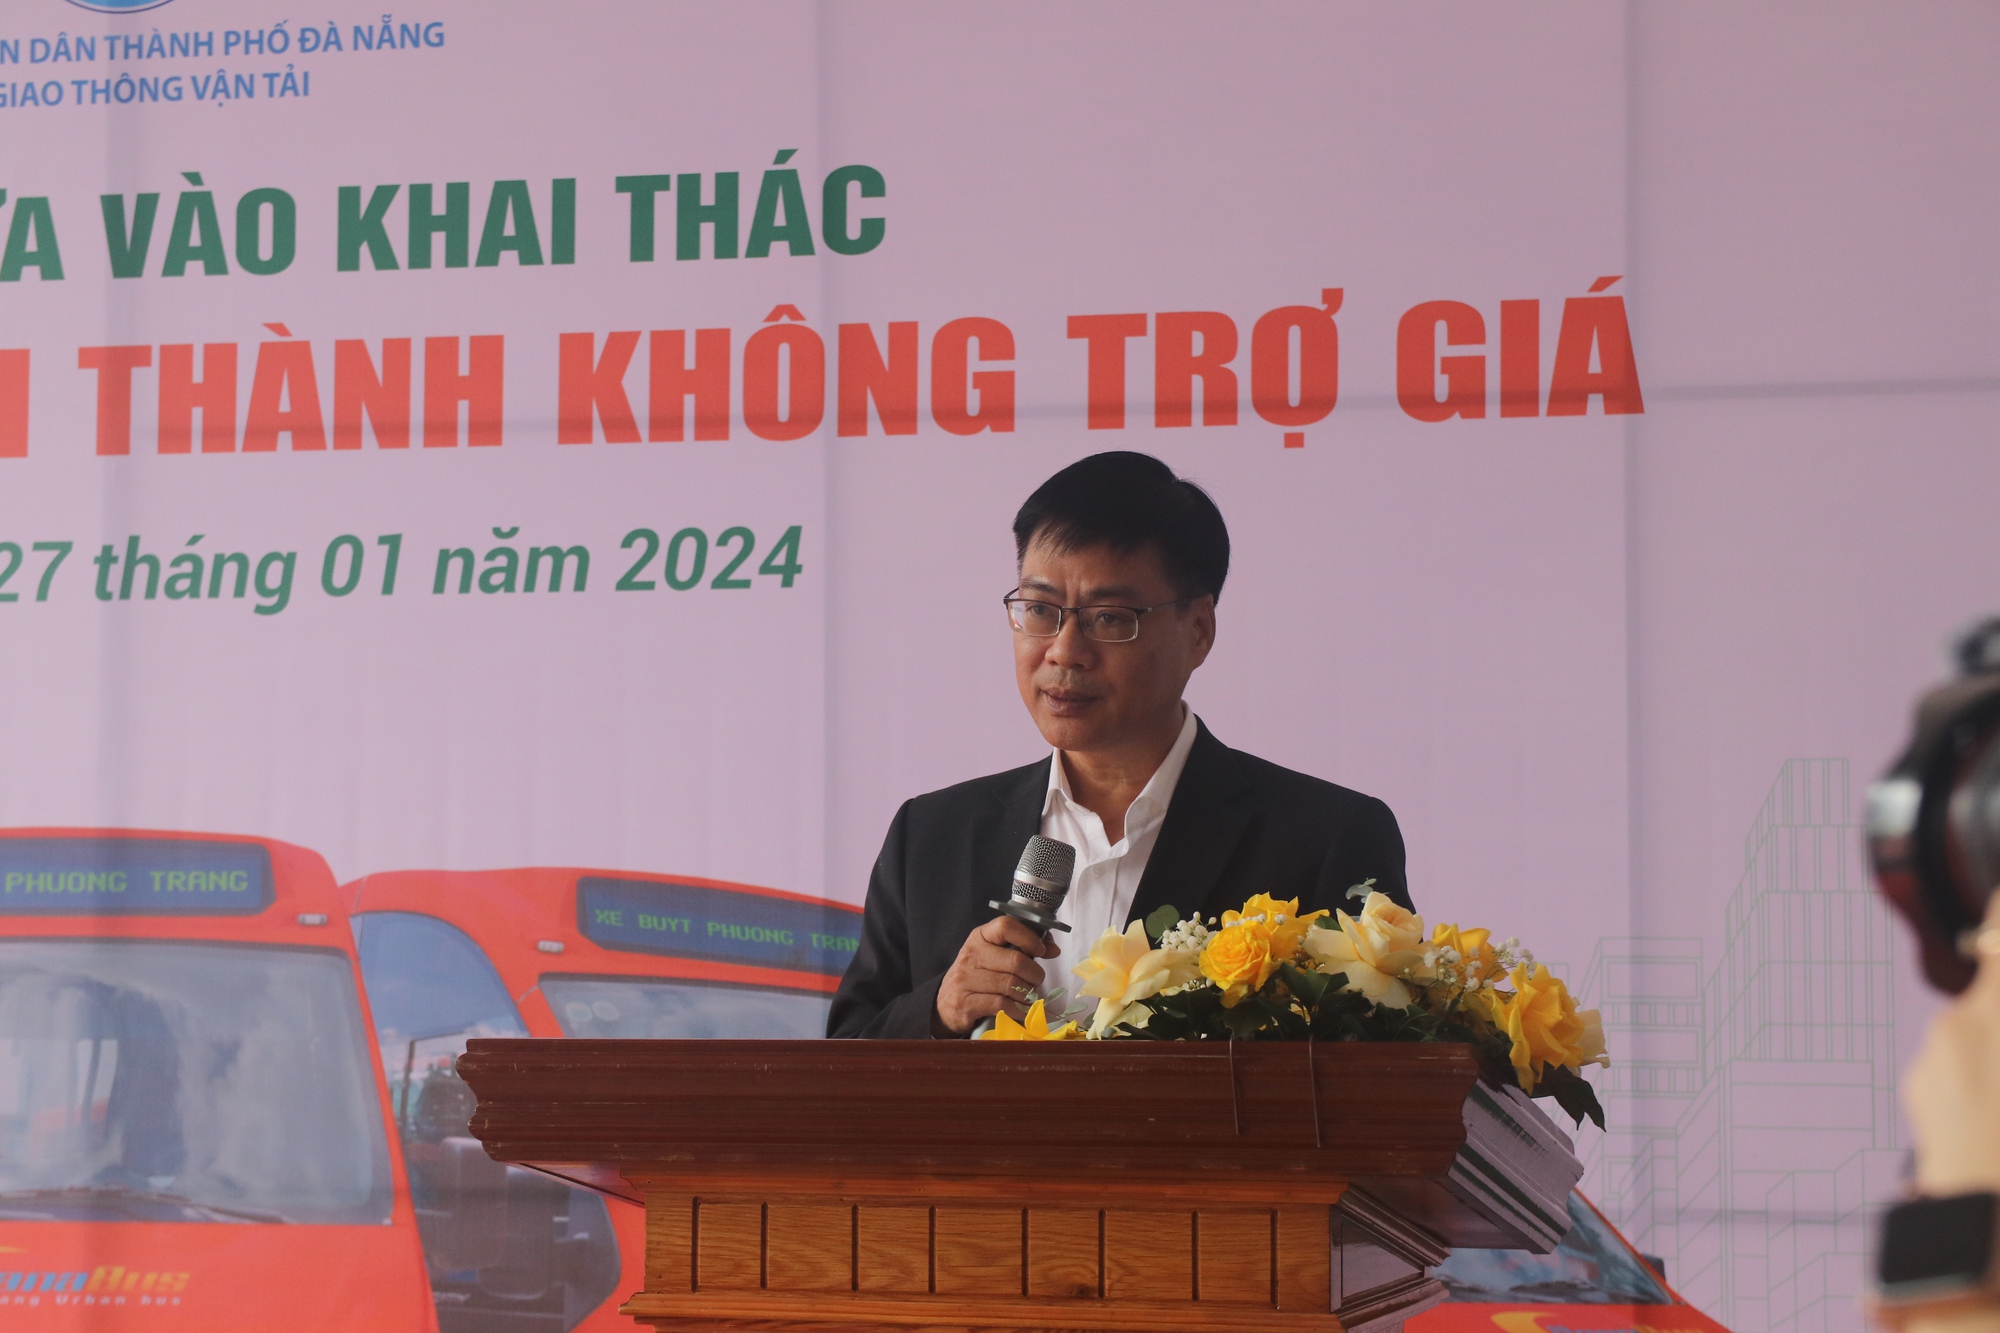 Đà Nẵng công bố khai thác 4 tuyến xe buýt không trợ giá- Ảnh 1.